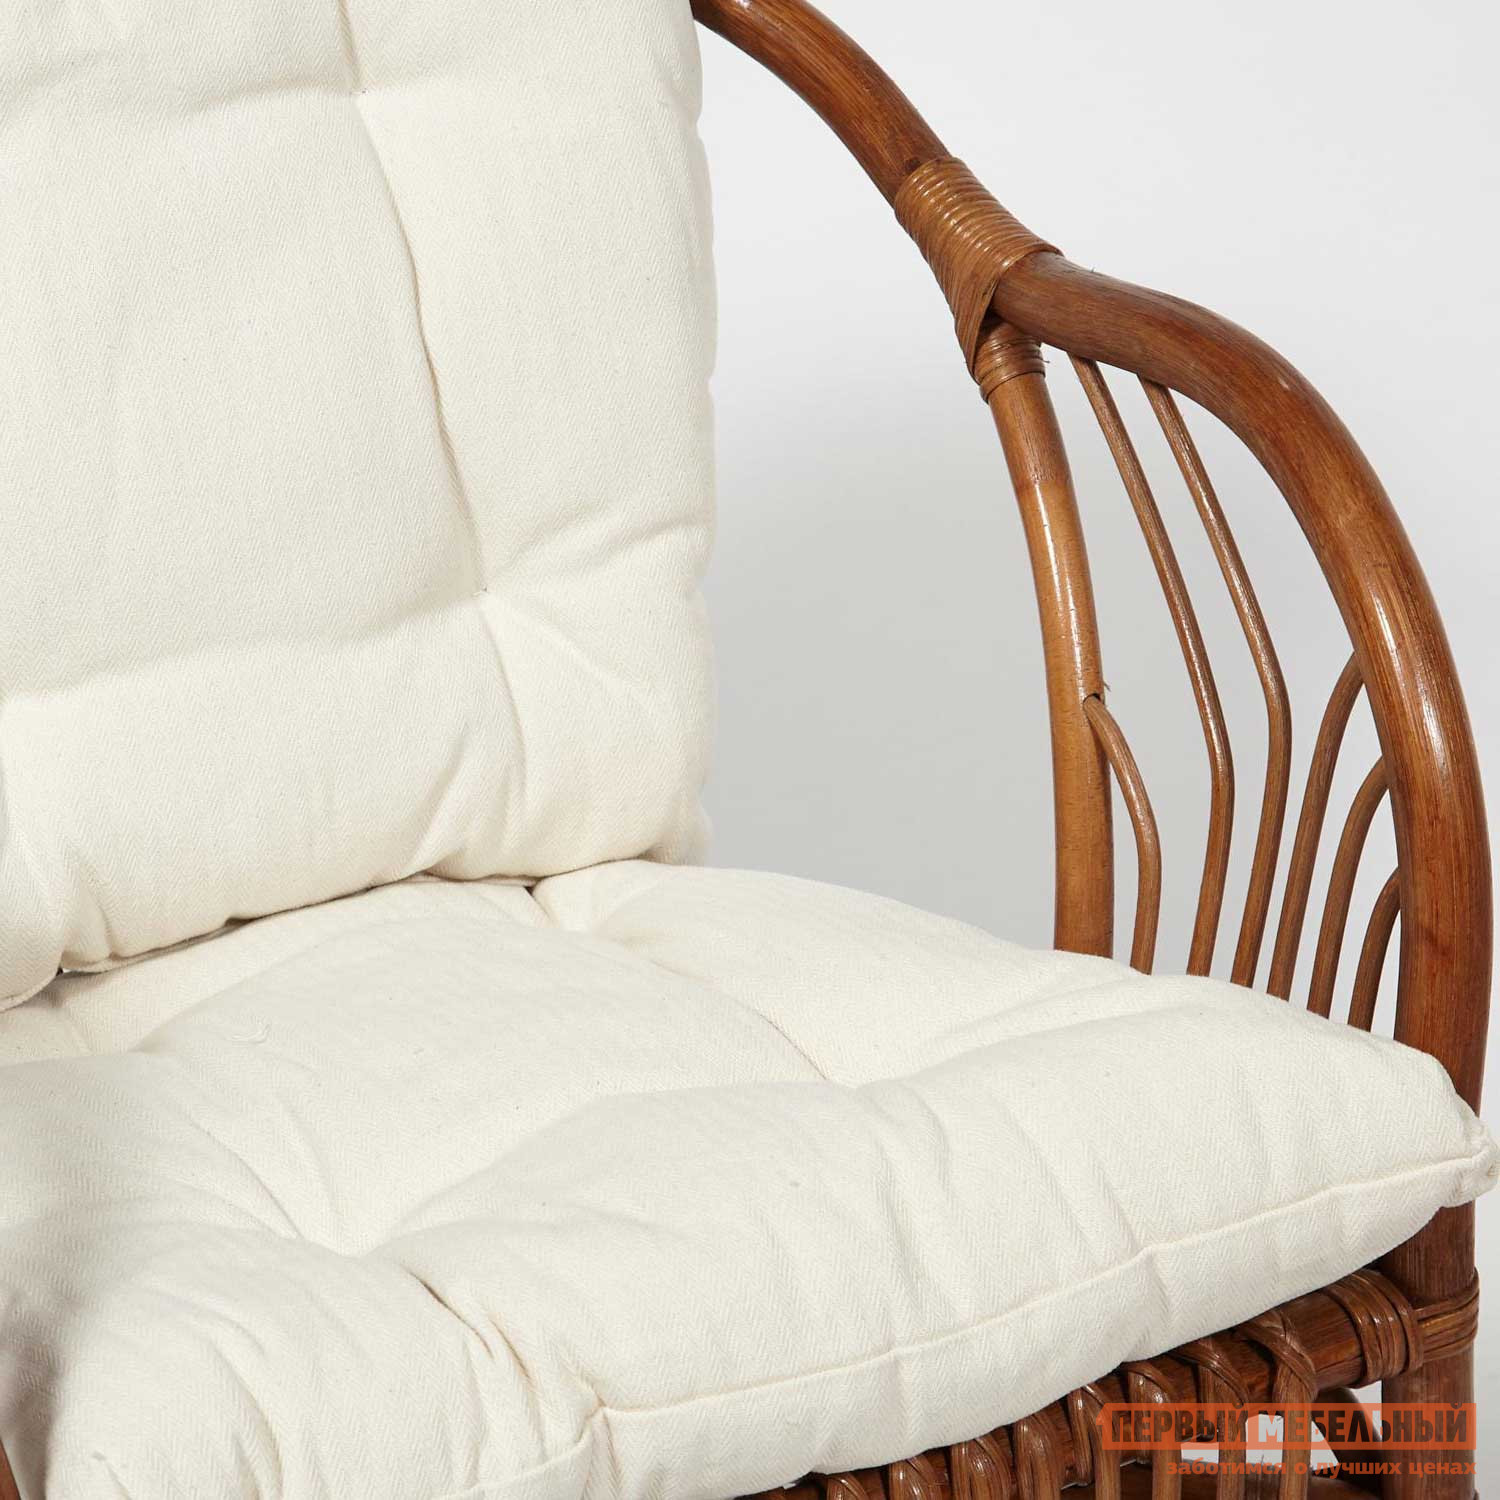 Комплект плетеной мебели  Нью Богота Коричневый кокос, ротанг / Бежевый, ткань от Первый Мебельный